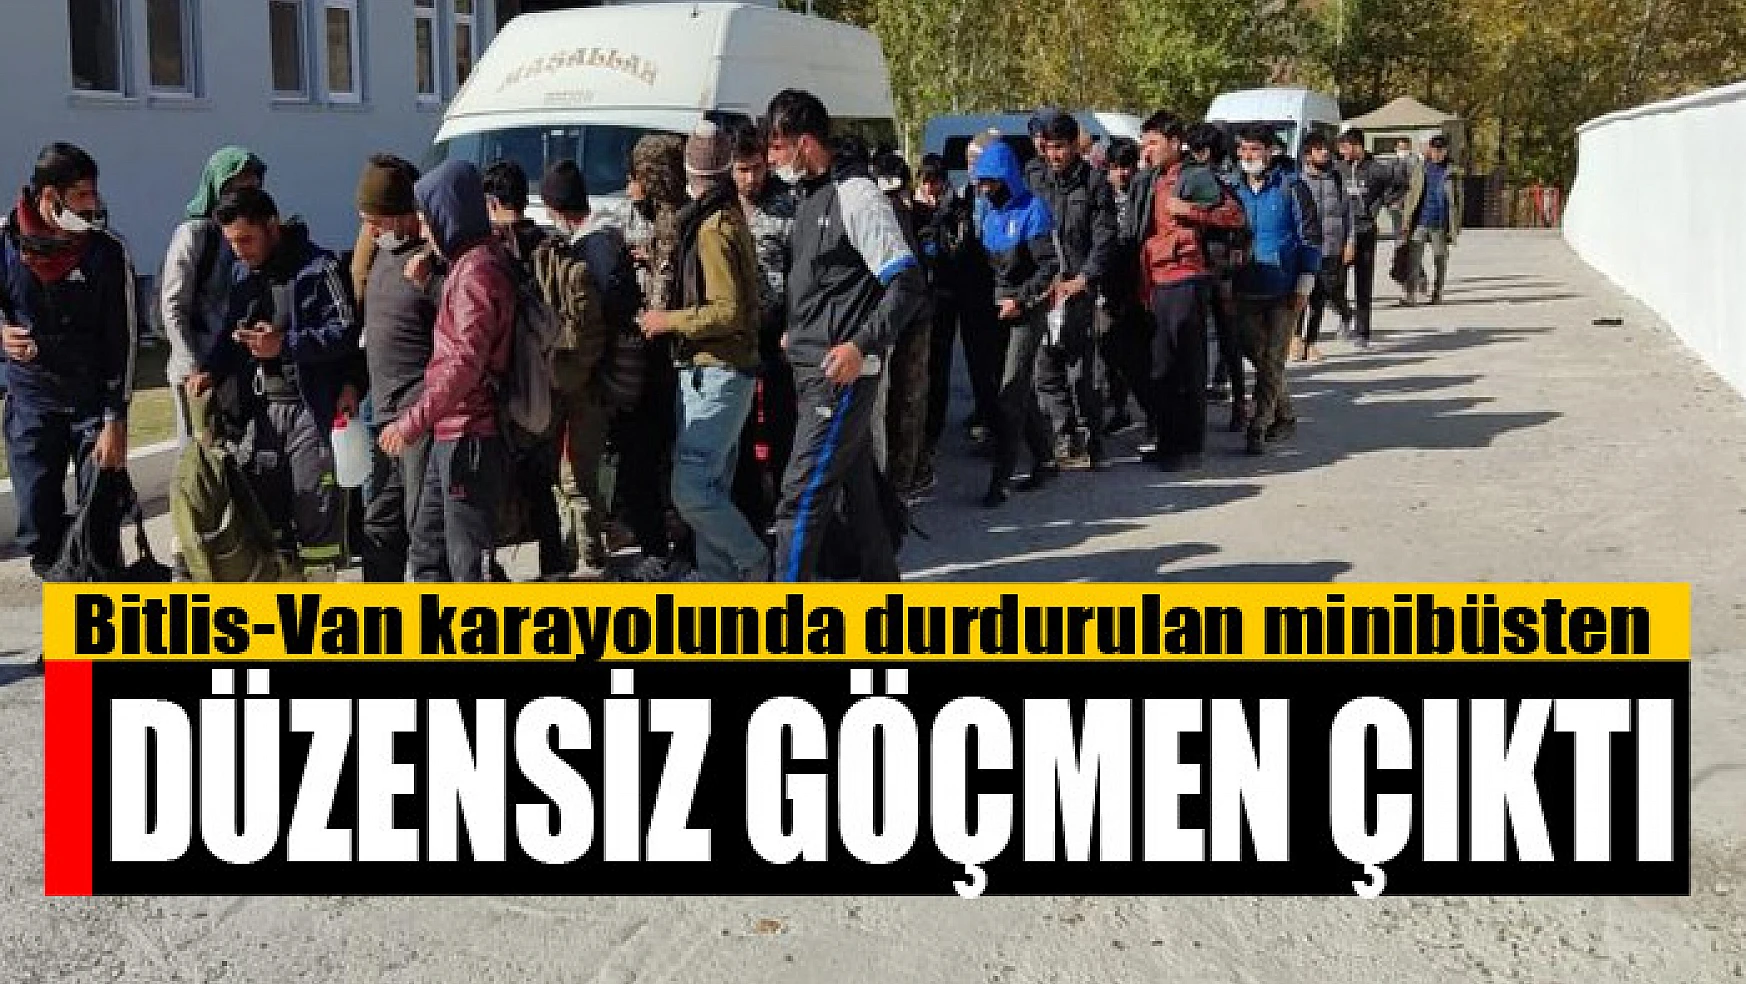 Bitlis-Van karayolunda durdurulan minibüsten düzensiz göçmen çıktı